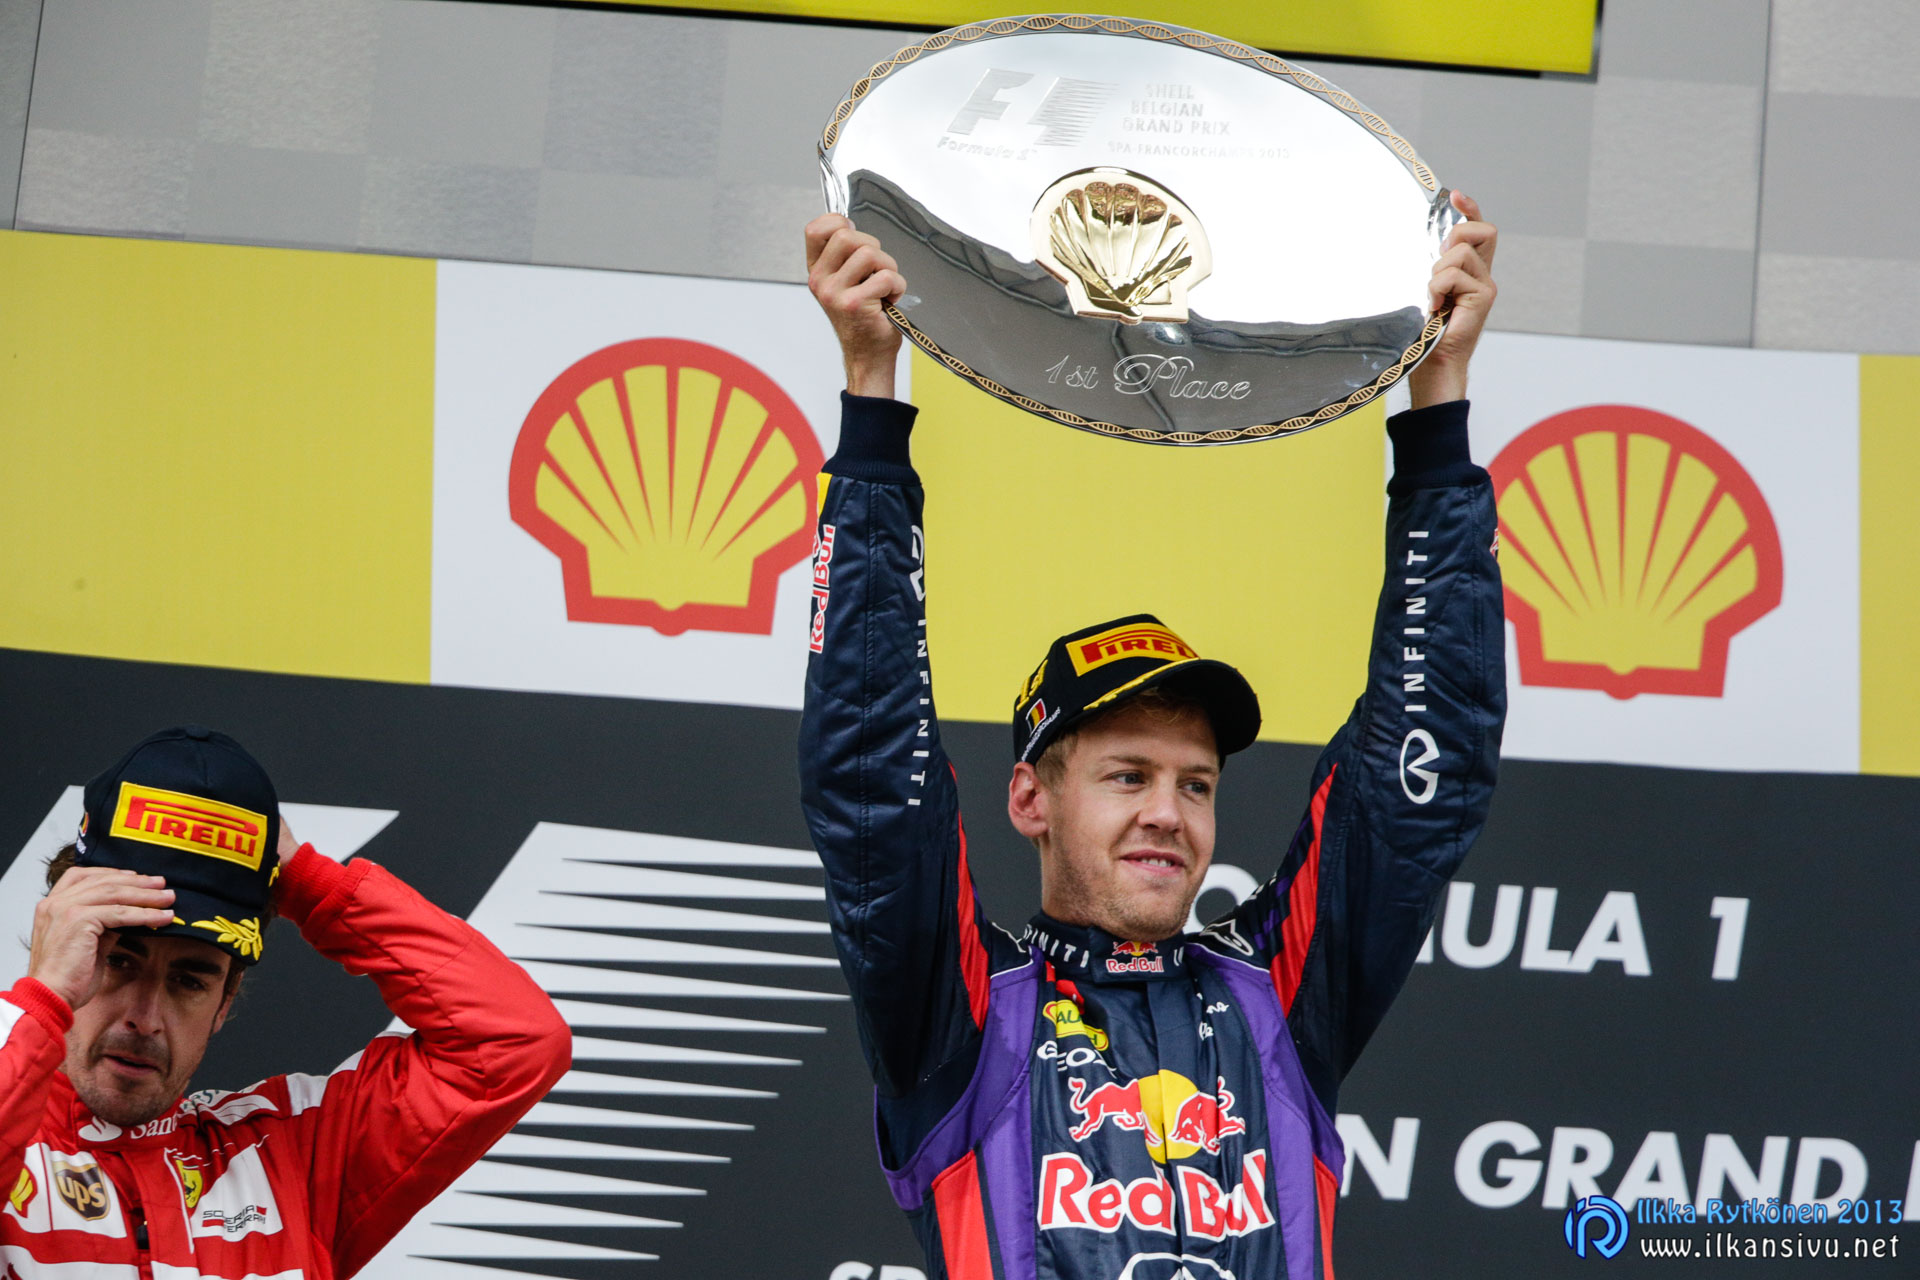 1/1000 s, f/7,1, ISO 2500, 700 mm, EF500mm f/4L IS II USM +1.4x III, 2013 Formula 1 Shell Belgian Grand Prix, Sebastian Vettel